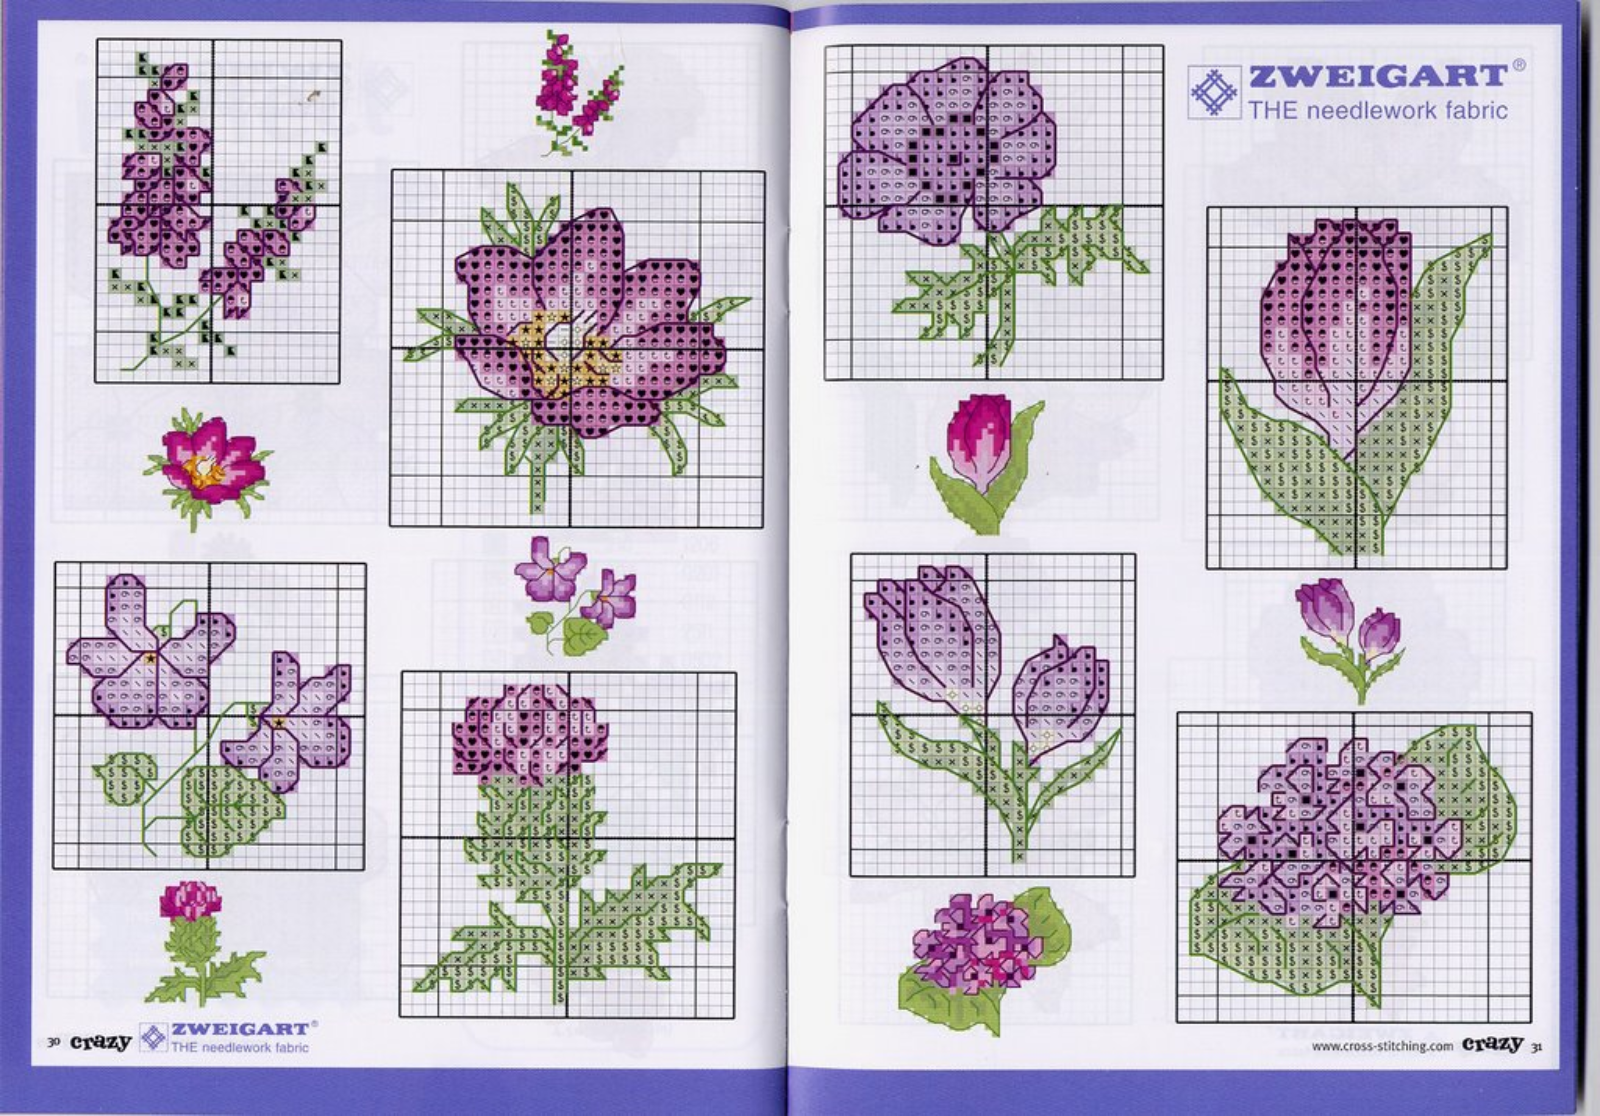 Fiori e fiorellini color viola schemi punto a croce (2)